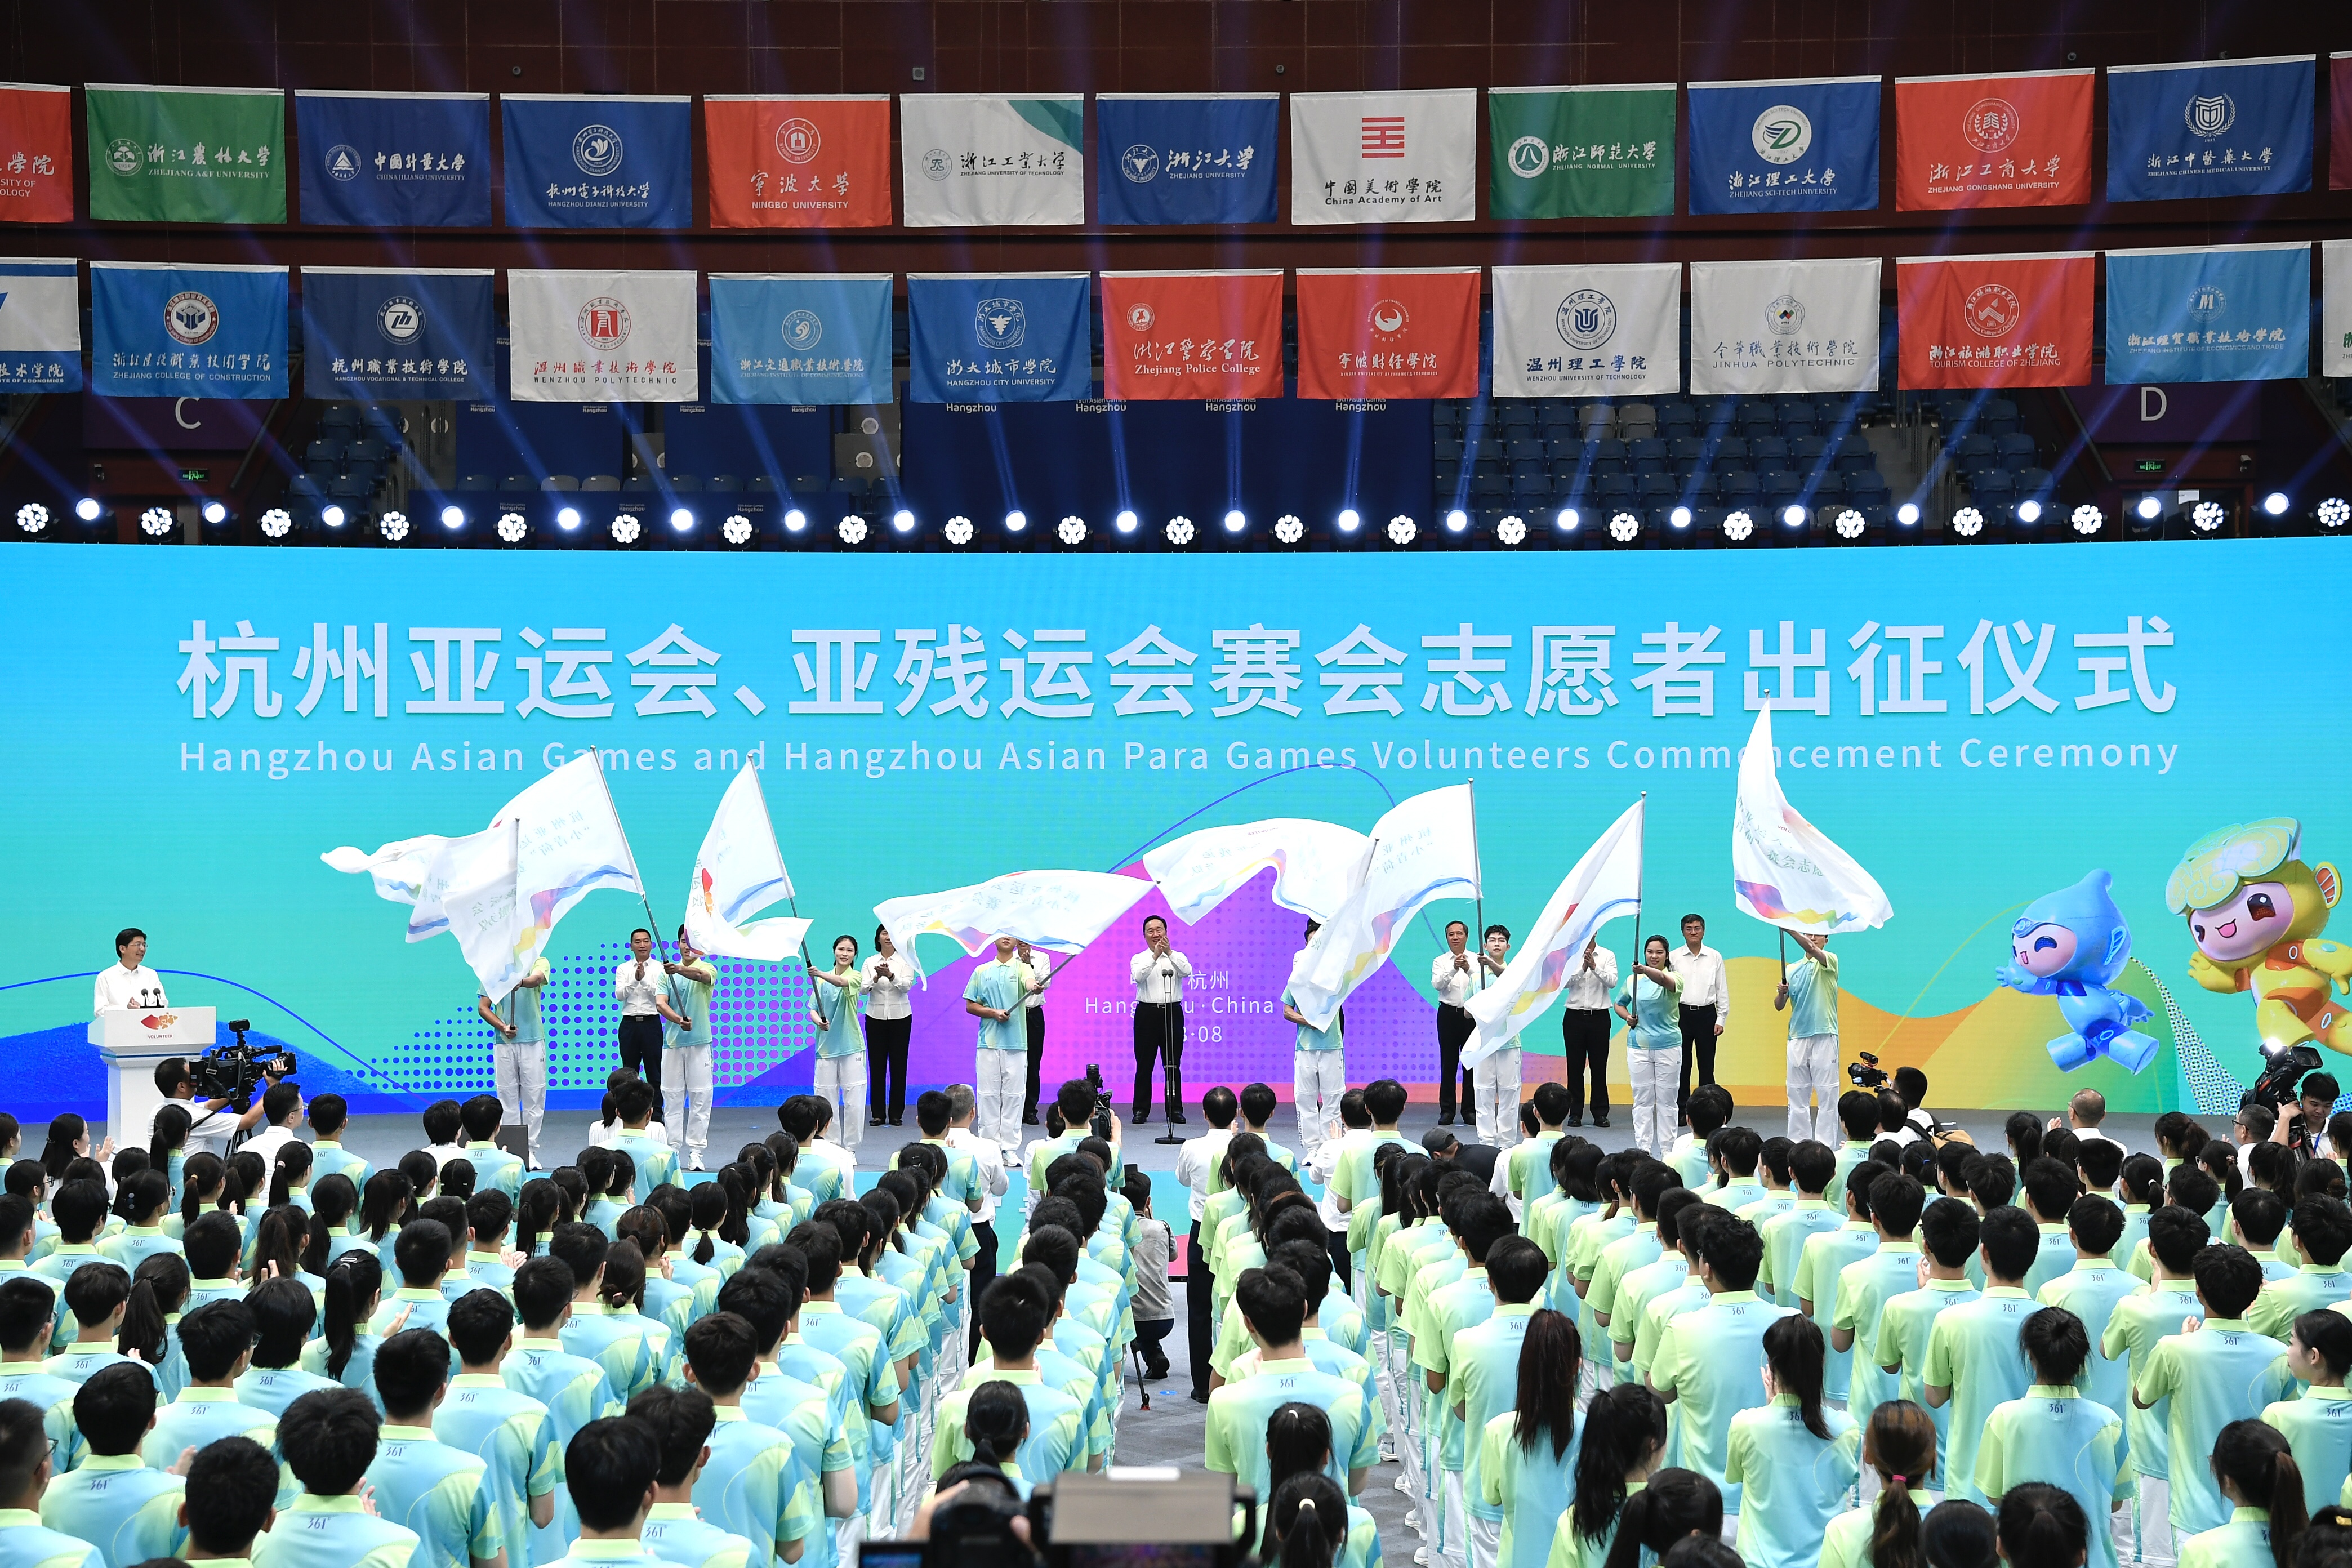 3.76万名“小青荷”集结完毕 杭州亚运会、亚残运会赛会志愿服务队出征